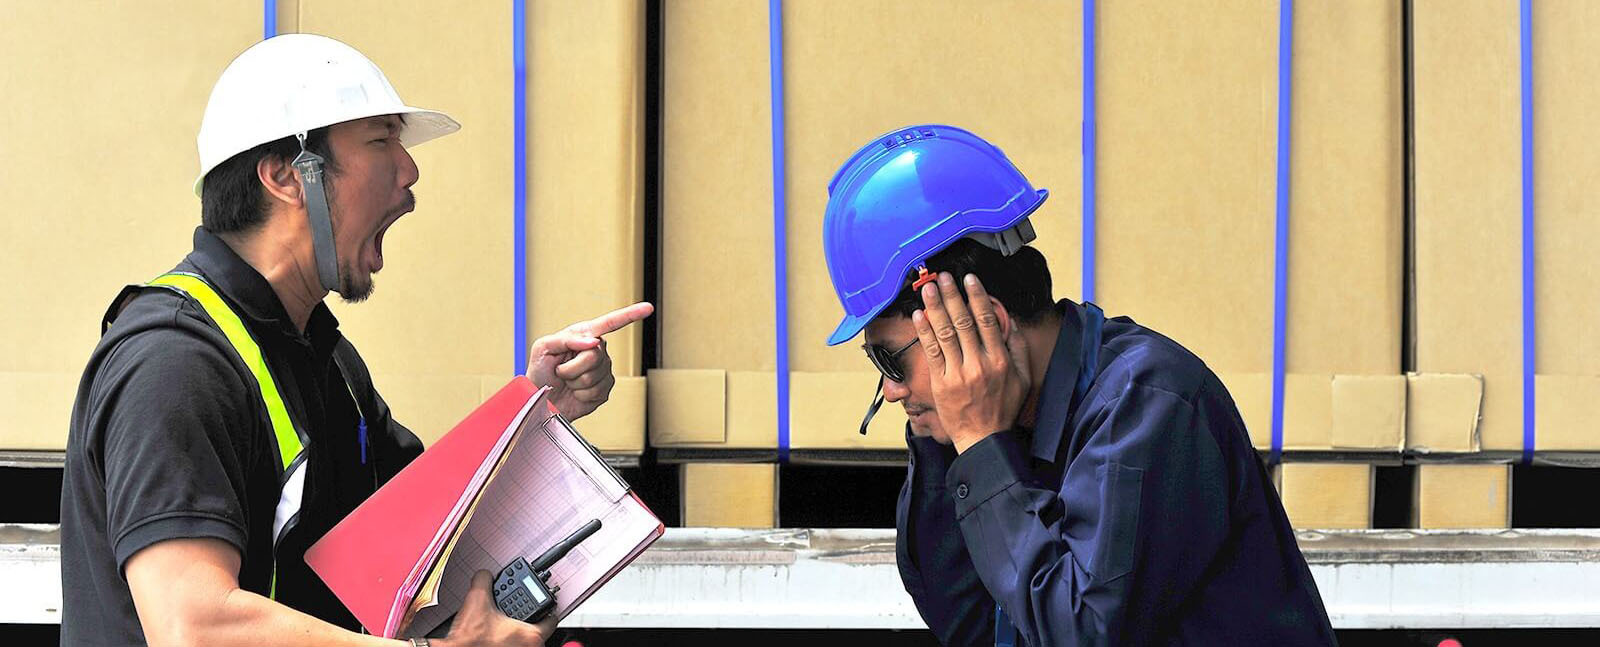 建設現場でトラブルになり、責任者が従業員を叱責している写真